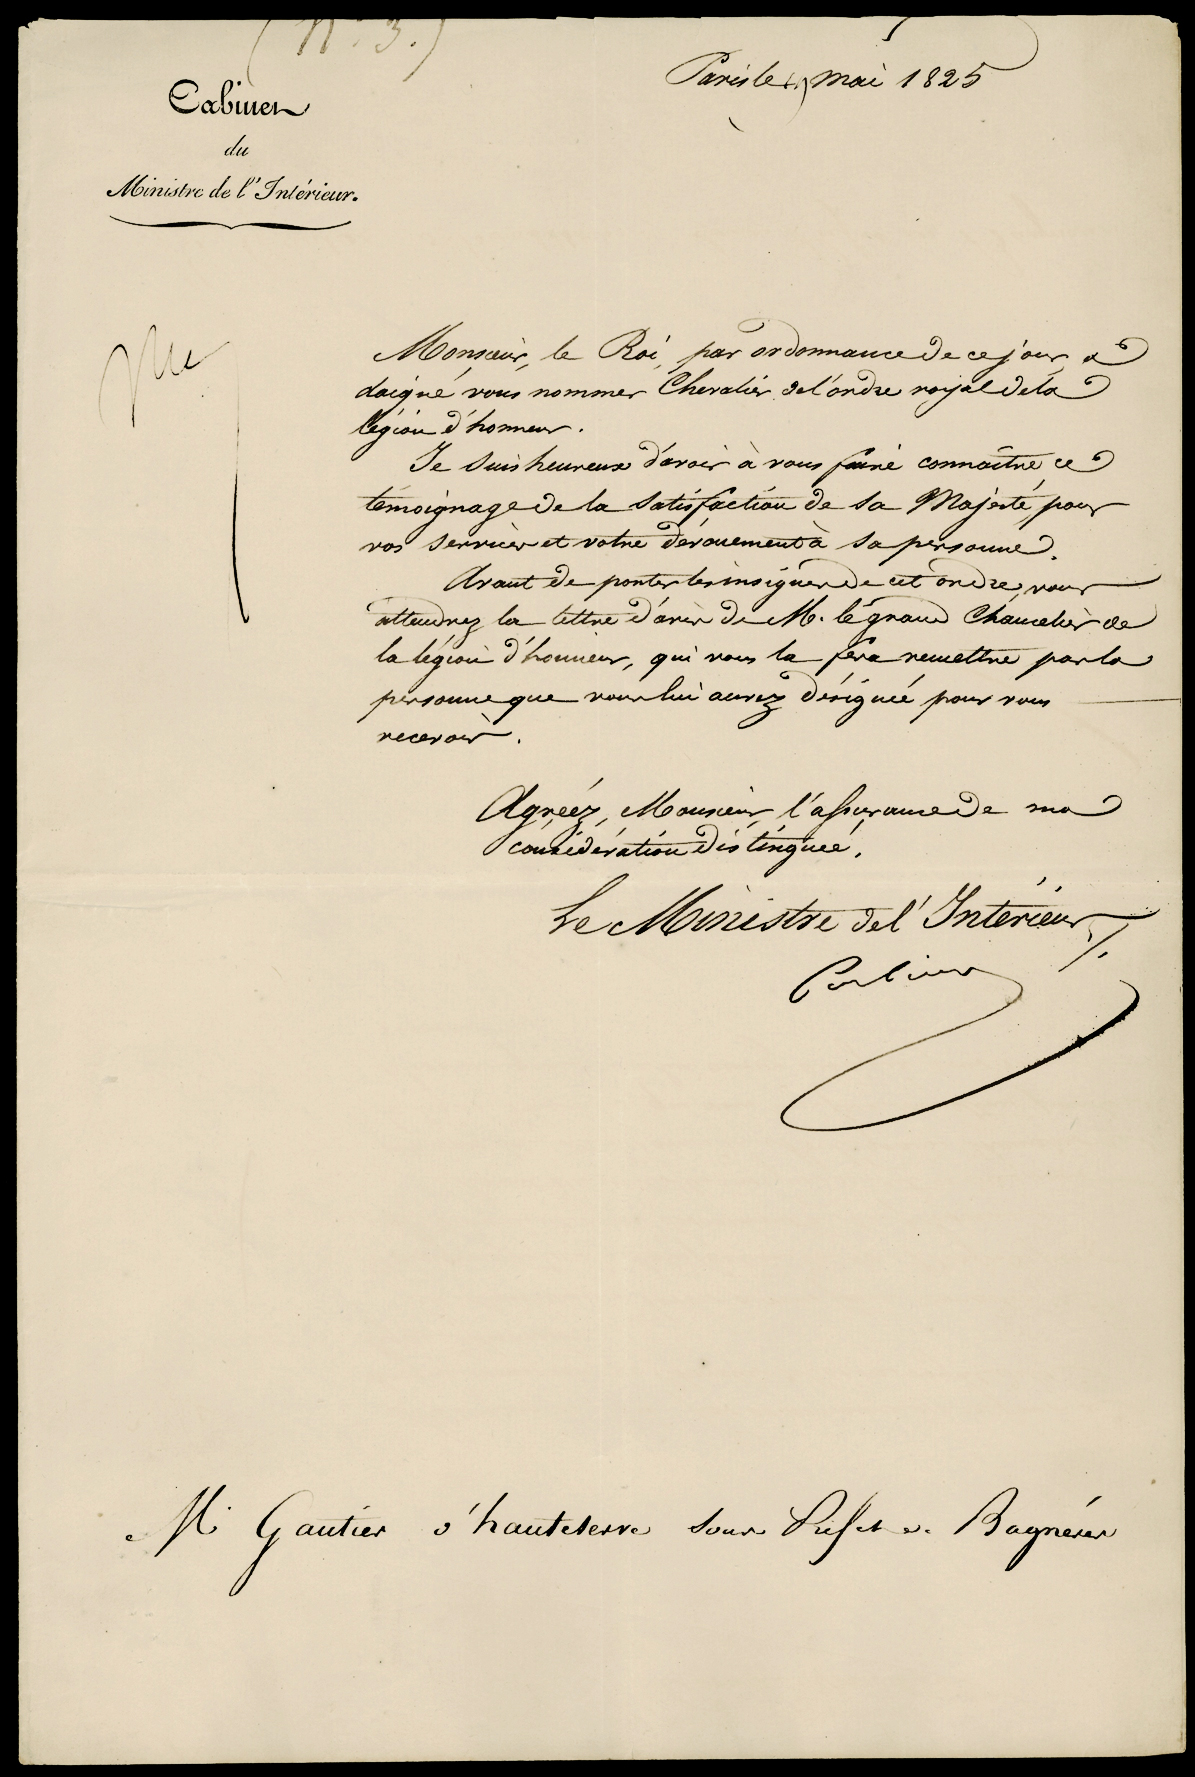 Referenz: corbiere-jacques-josepf-de-comte-ministre-de-l-interieur-1821-28-pair-de-france